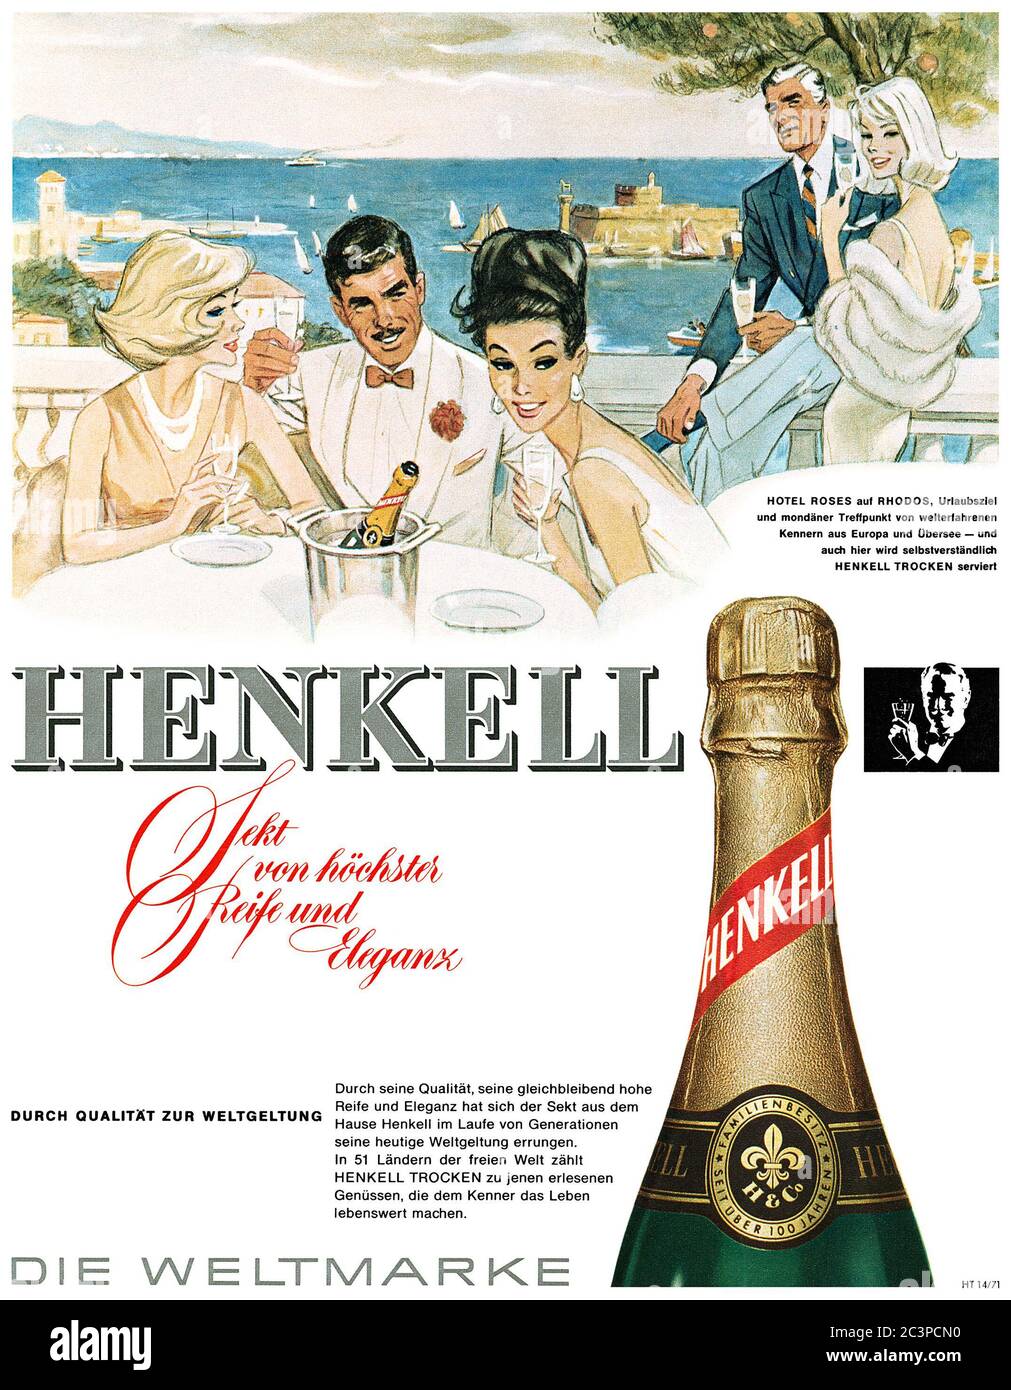 1964 Deutsche Werbung für Henkell Sekt Stockfotografie - Alamy